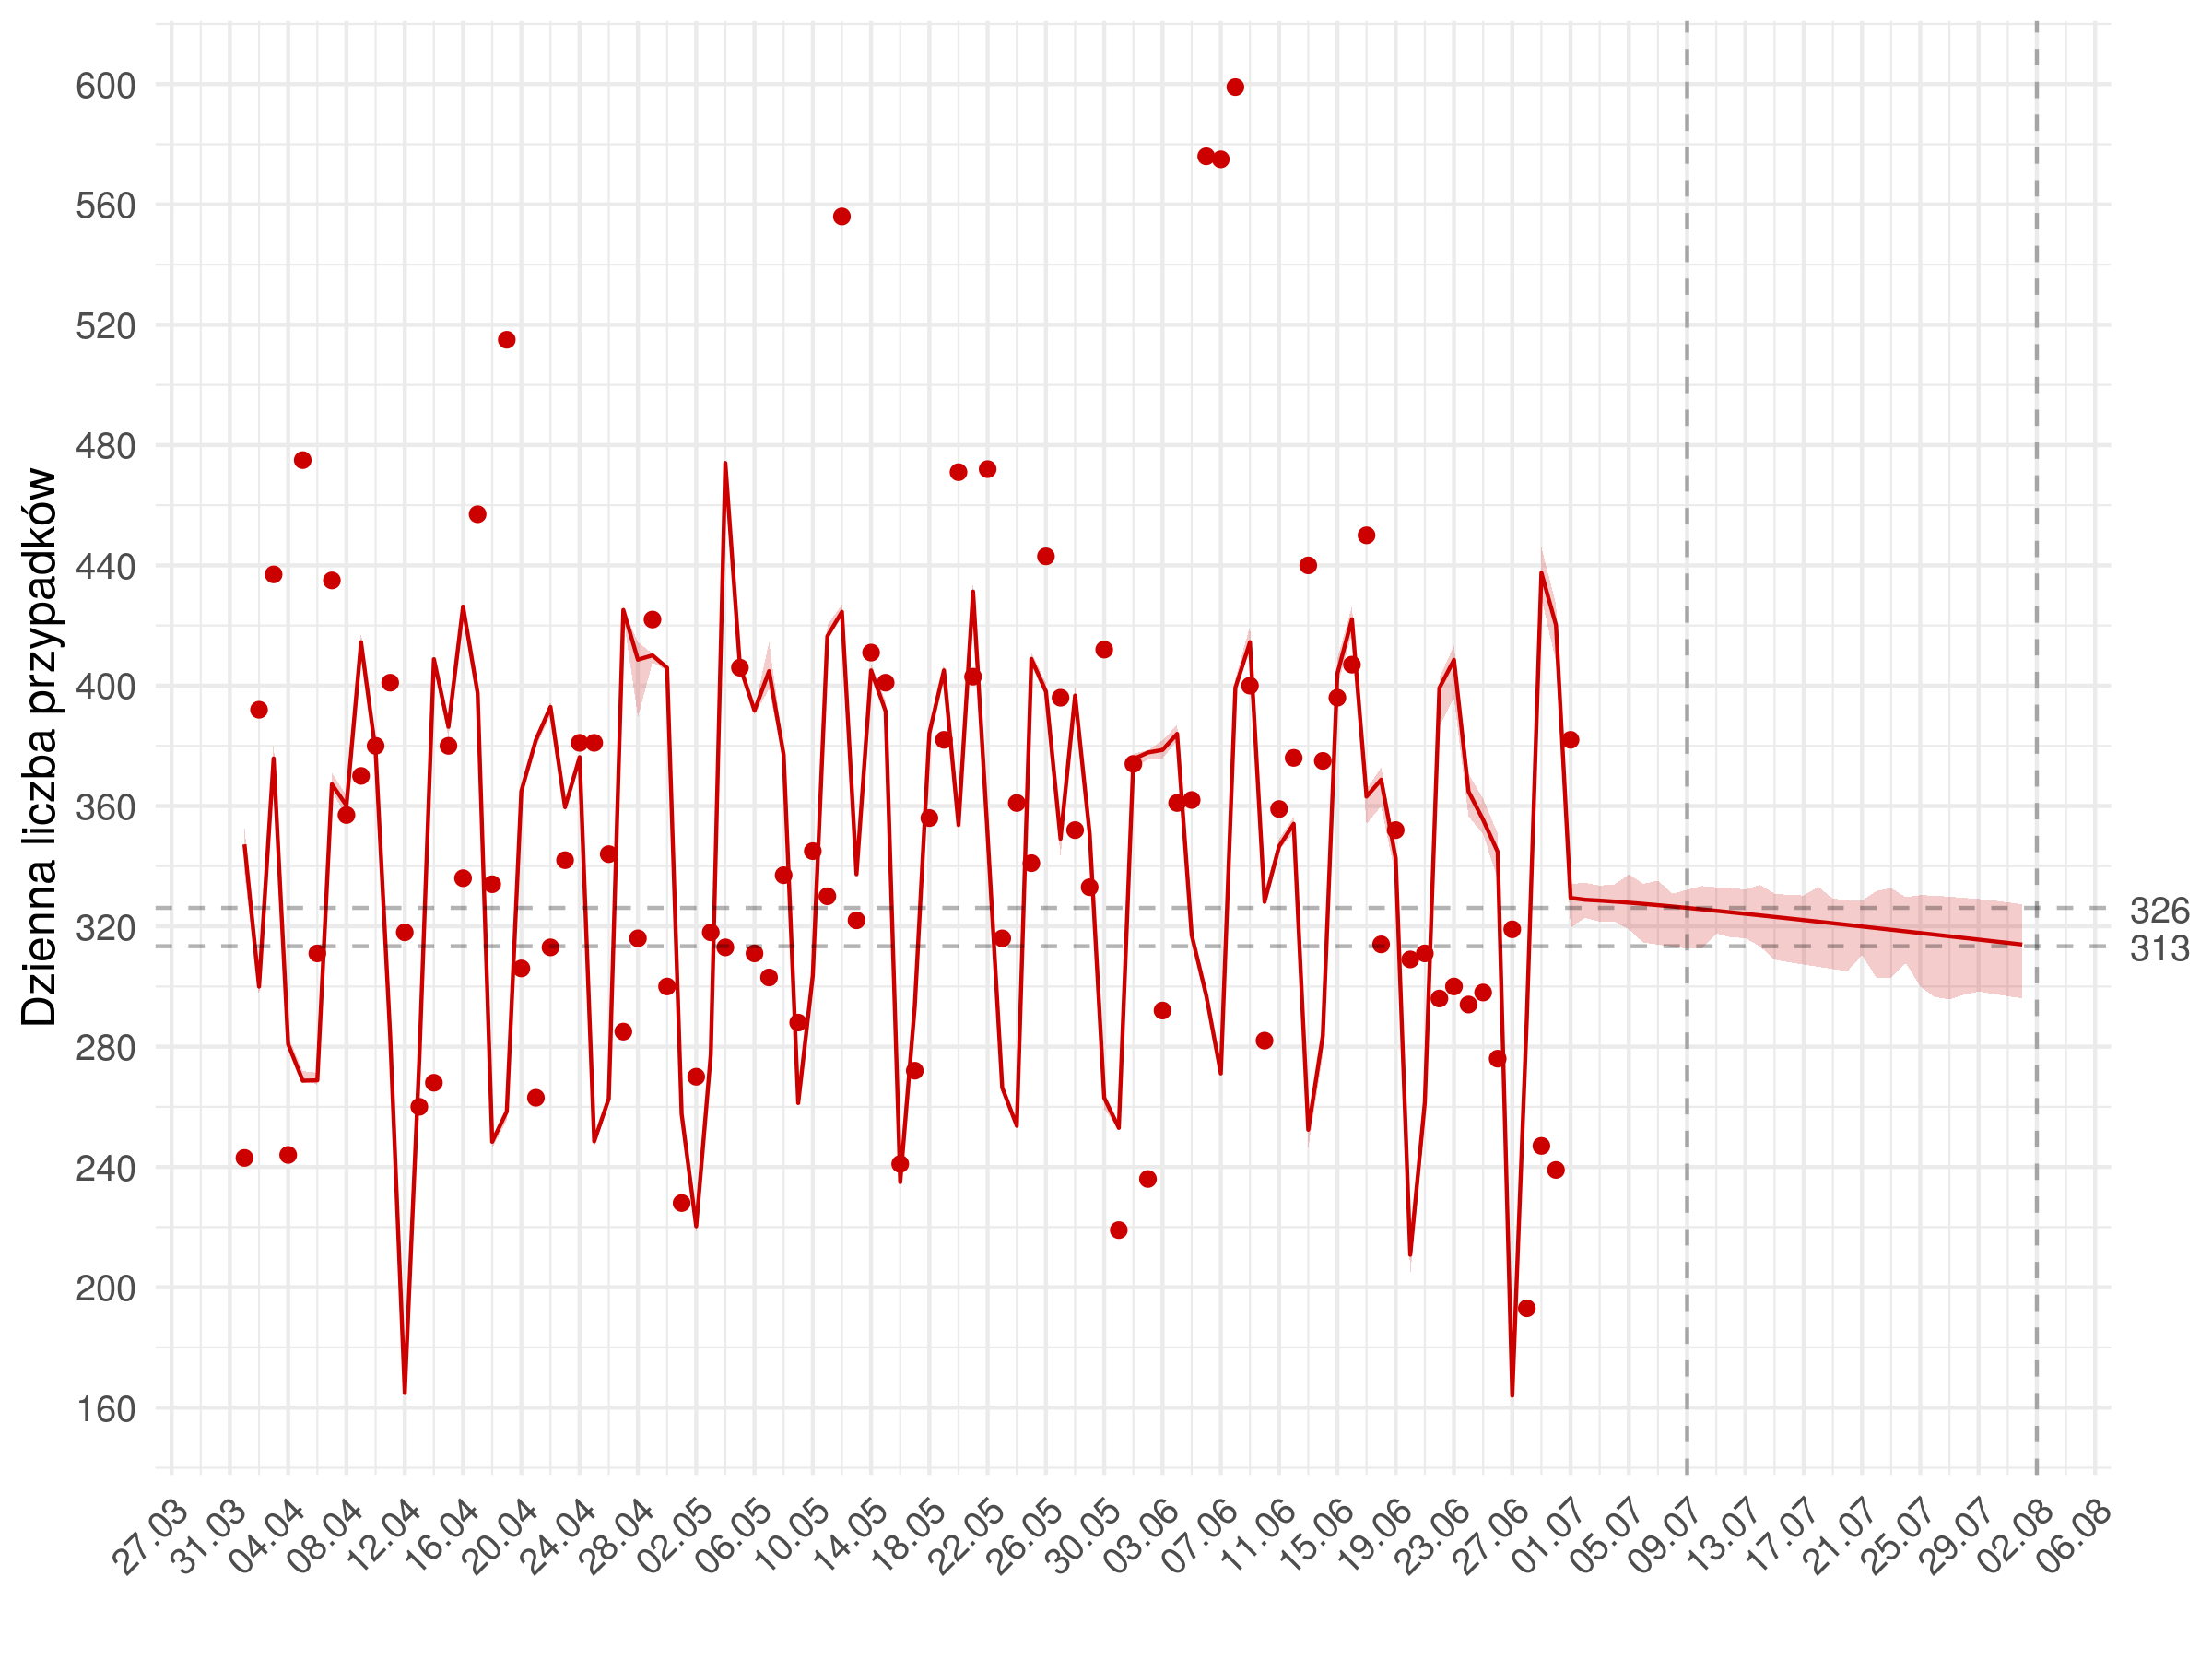 Średnioterminowa prognoza dziennej liczby rozpoznań zdiagnozowanych (czerwona linia) w modelu stochastycznym. Czerwonymi kropkami oznaczono obserwowane dane. Czerwona linia pokazuje predykcję z modelu - do 01.07 jest to predykcja w oparciu o obserwowane liczby wykonanych testów, następnie przyjęto trend liczbie wykonywanych badań. Uwzględniono punkt odcięcia 4.05, po którym uległy zmianie wyestymowane parametry modelu.